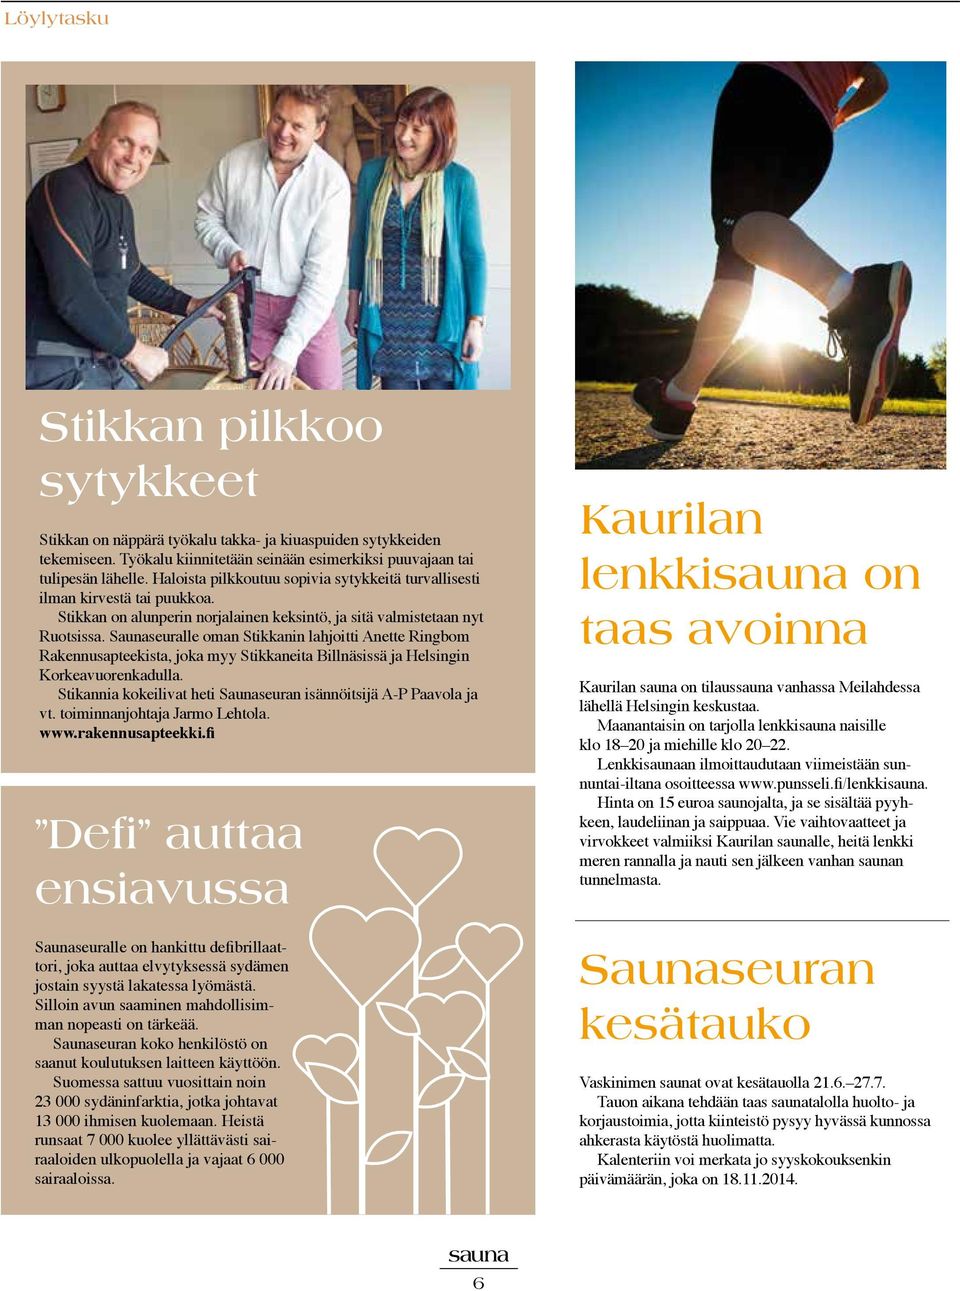 Saunaseuralle oman Stikkanin lahjoitti Anette Ringbom Rakennusapteekista, joka myy Stikkaneita Billnäsissä ja Helsingin Korkeavuorenkadulla.